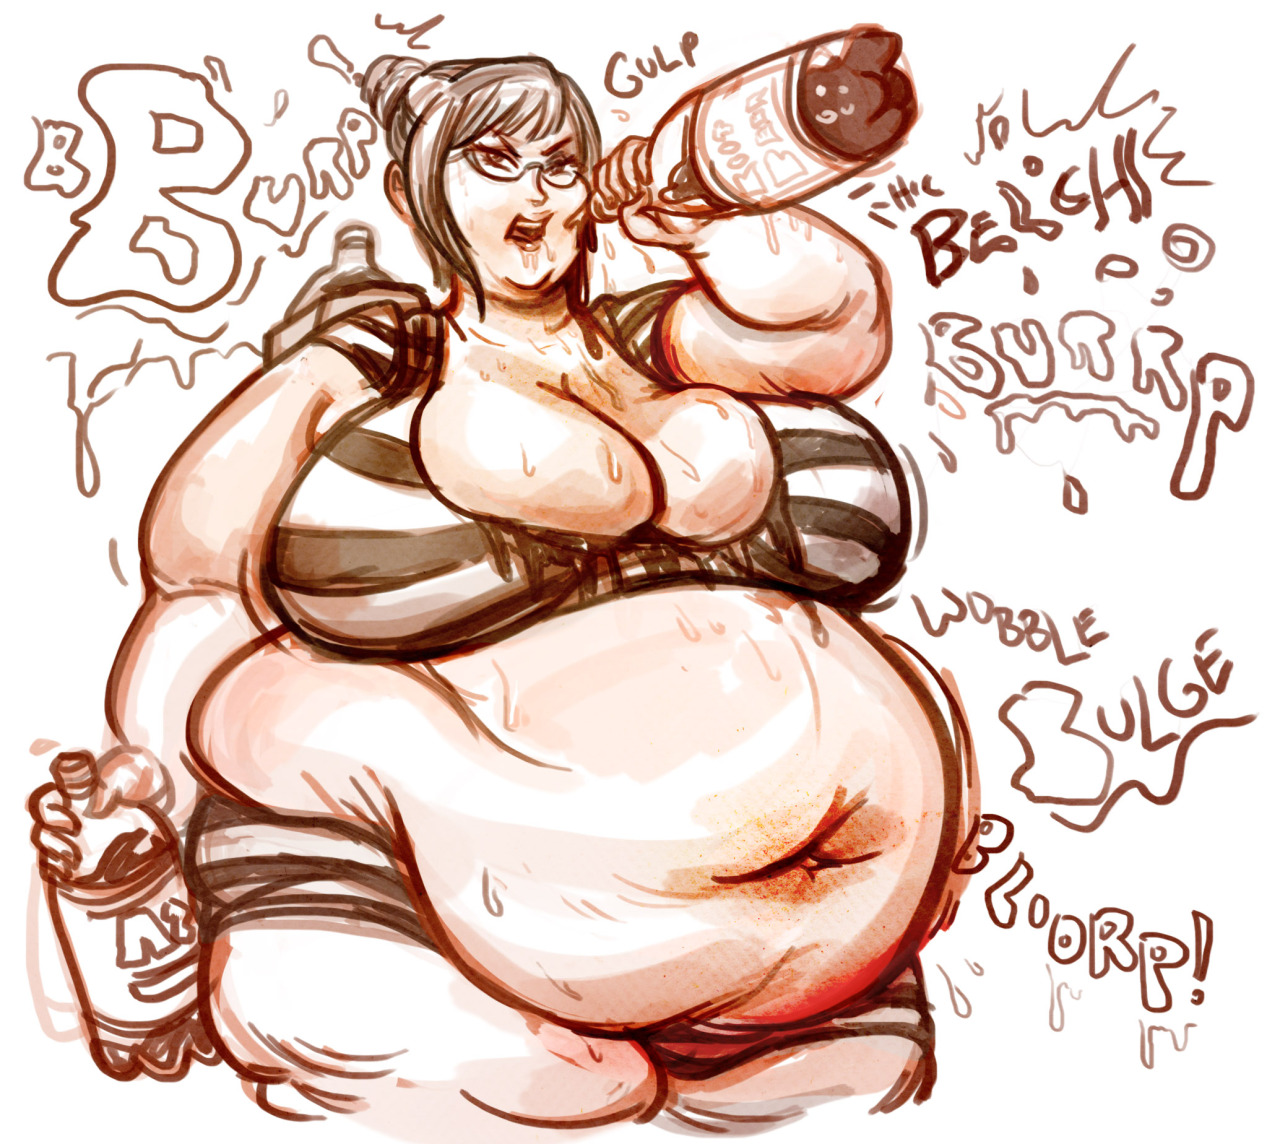 fatline:  Meiko you bloaty bloaty girl! *Belch* Too much root beer! Root beer queen